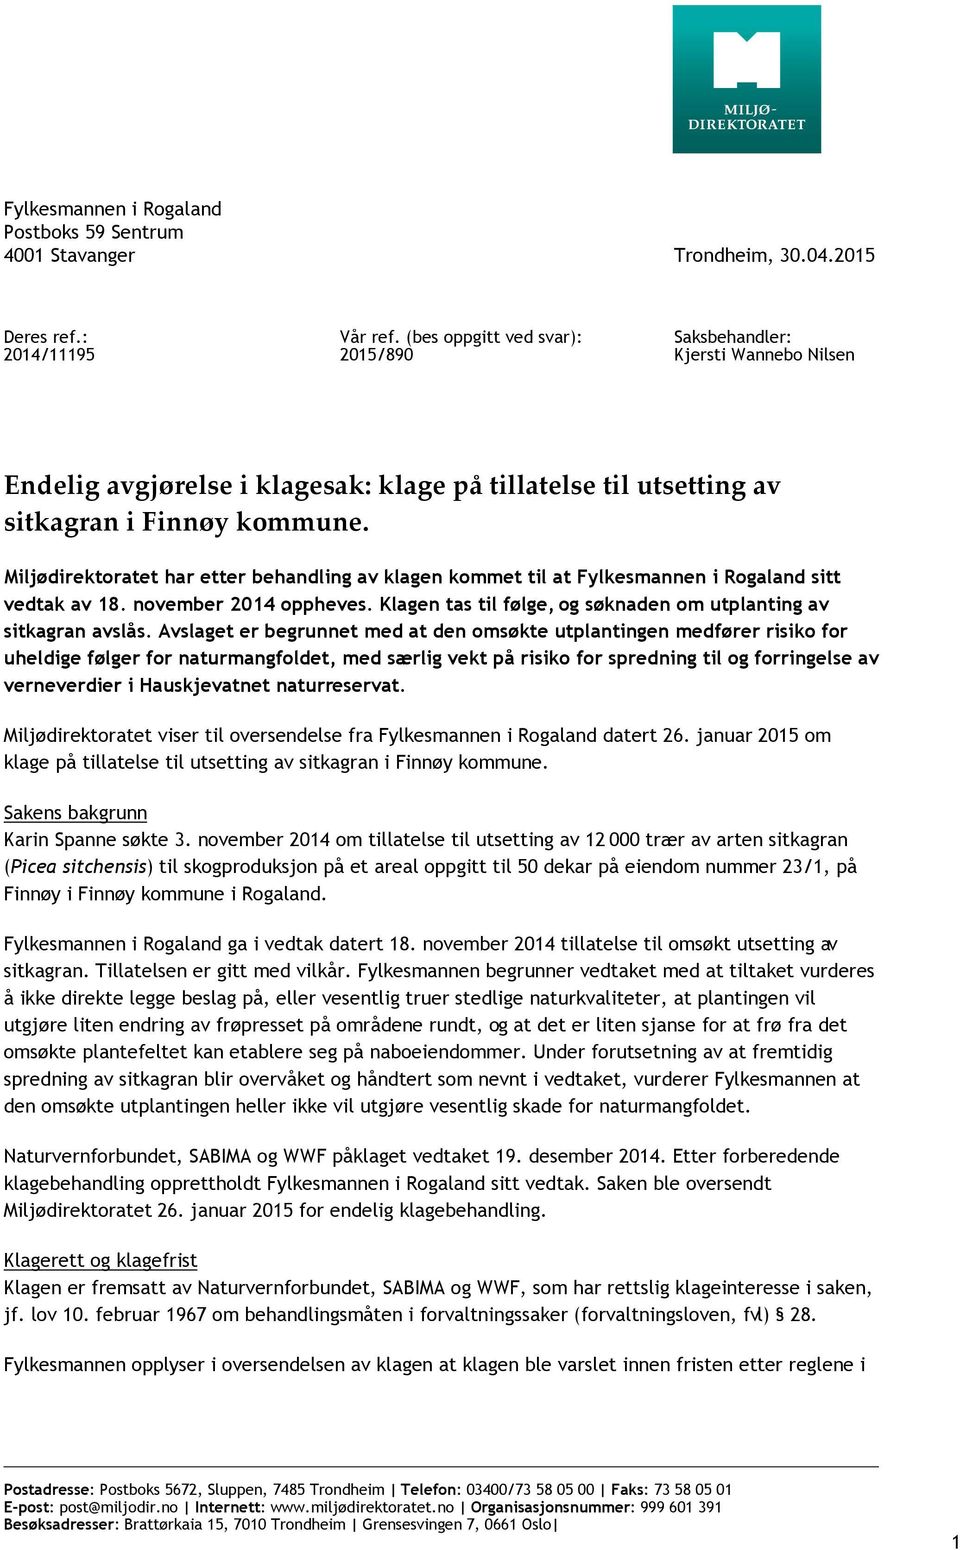 Miljødirektoratet har etter behandling av klagen kommet til at Fylkesmannen i Rogaland sitt vedtak av 18. november 2014 oppheves. Klagen tas til følge, og søknaden om utplanting av sitkagran avslås.